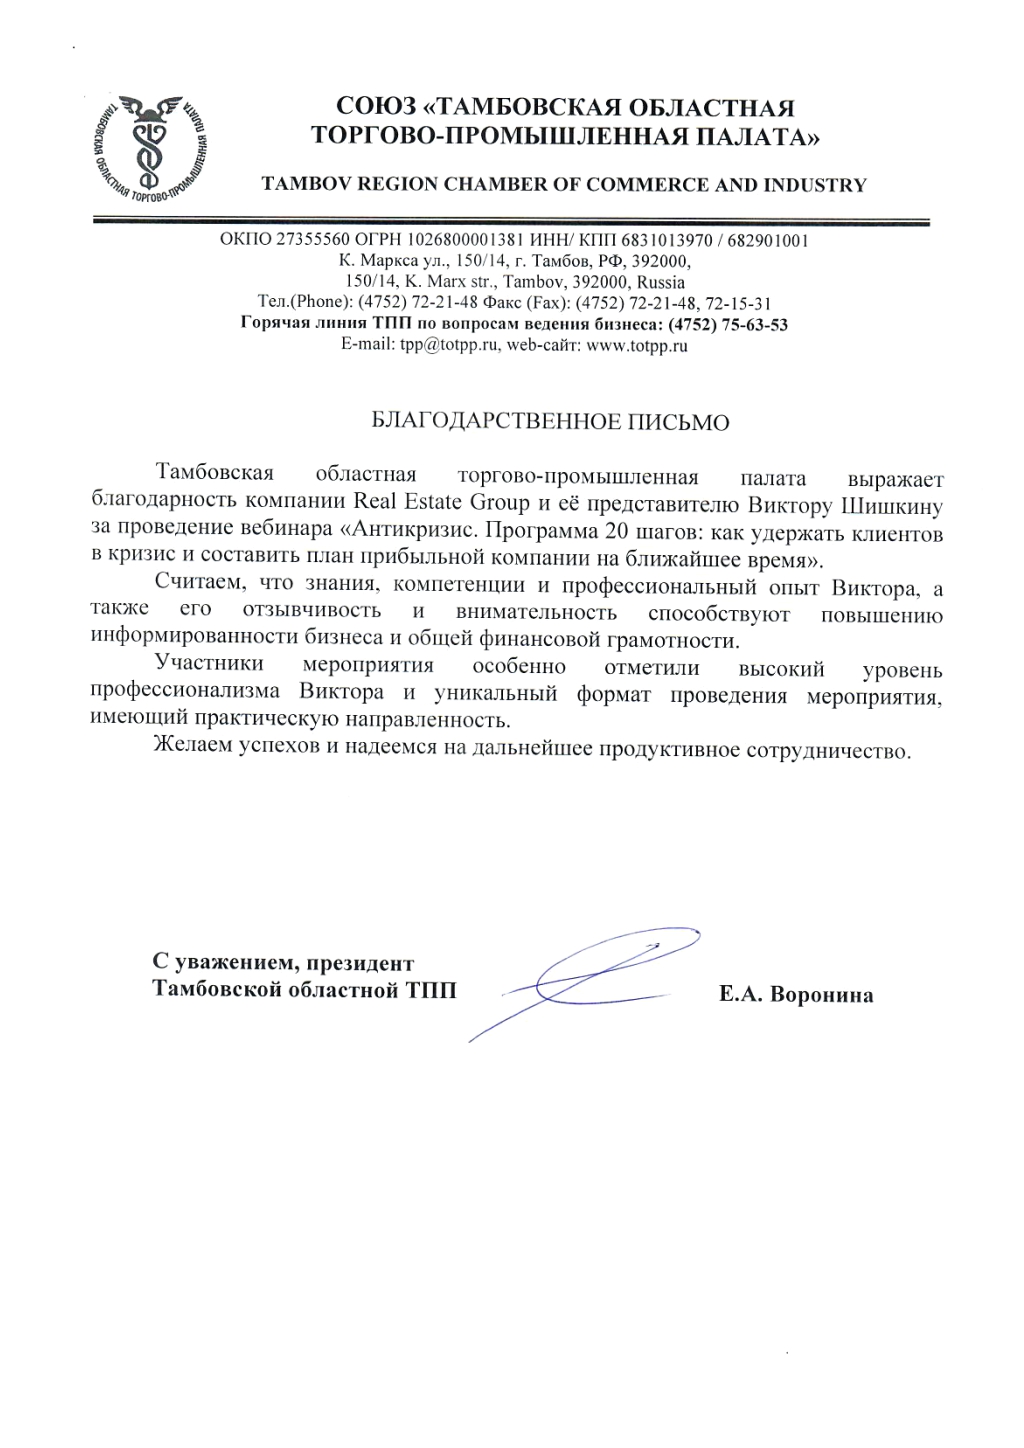 Благодарственное письмо Тамбовской областной торгово-промышленной палаты - Real Estate Group и Виктору Шишкину